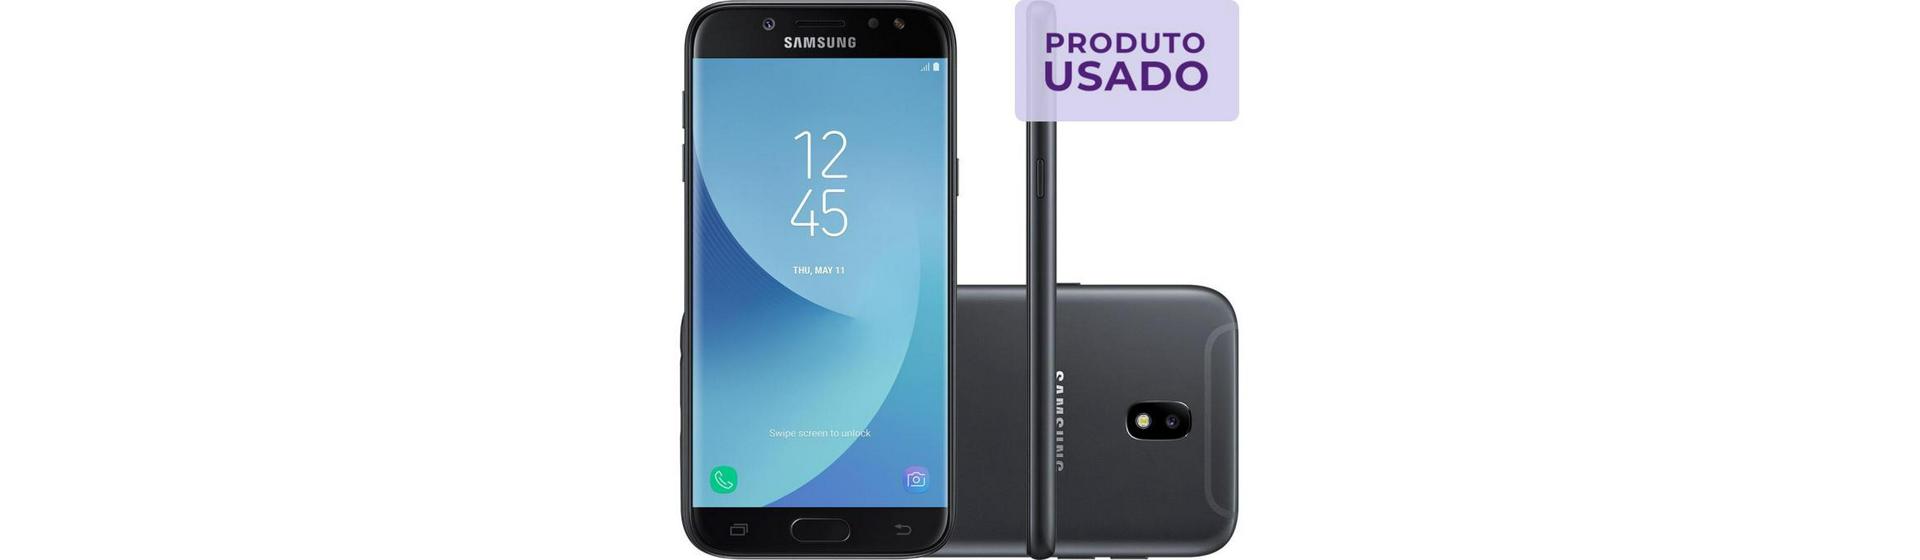 Samsung Galaxy J5 - Aplicativos e Jogos - Português 